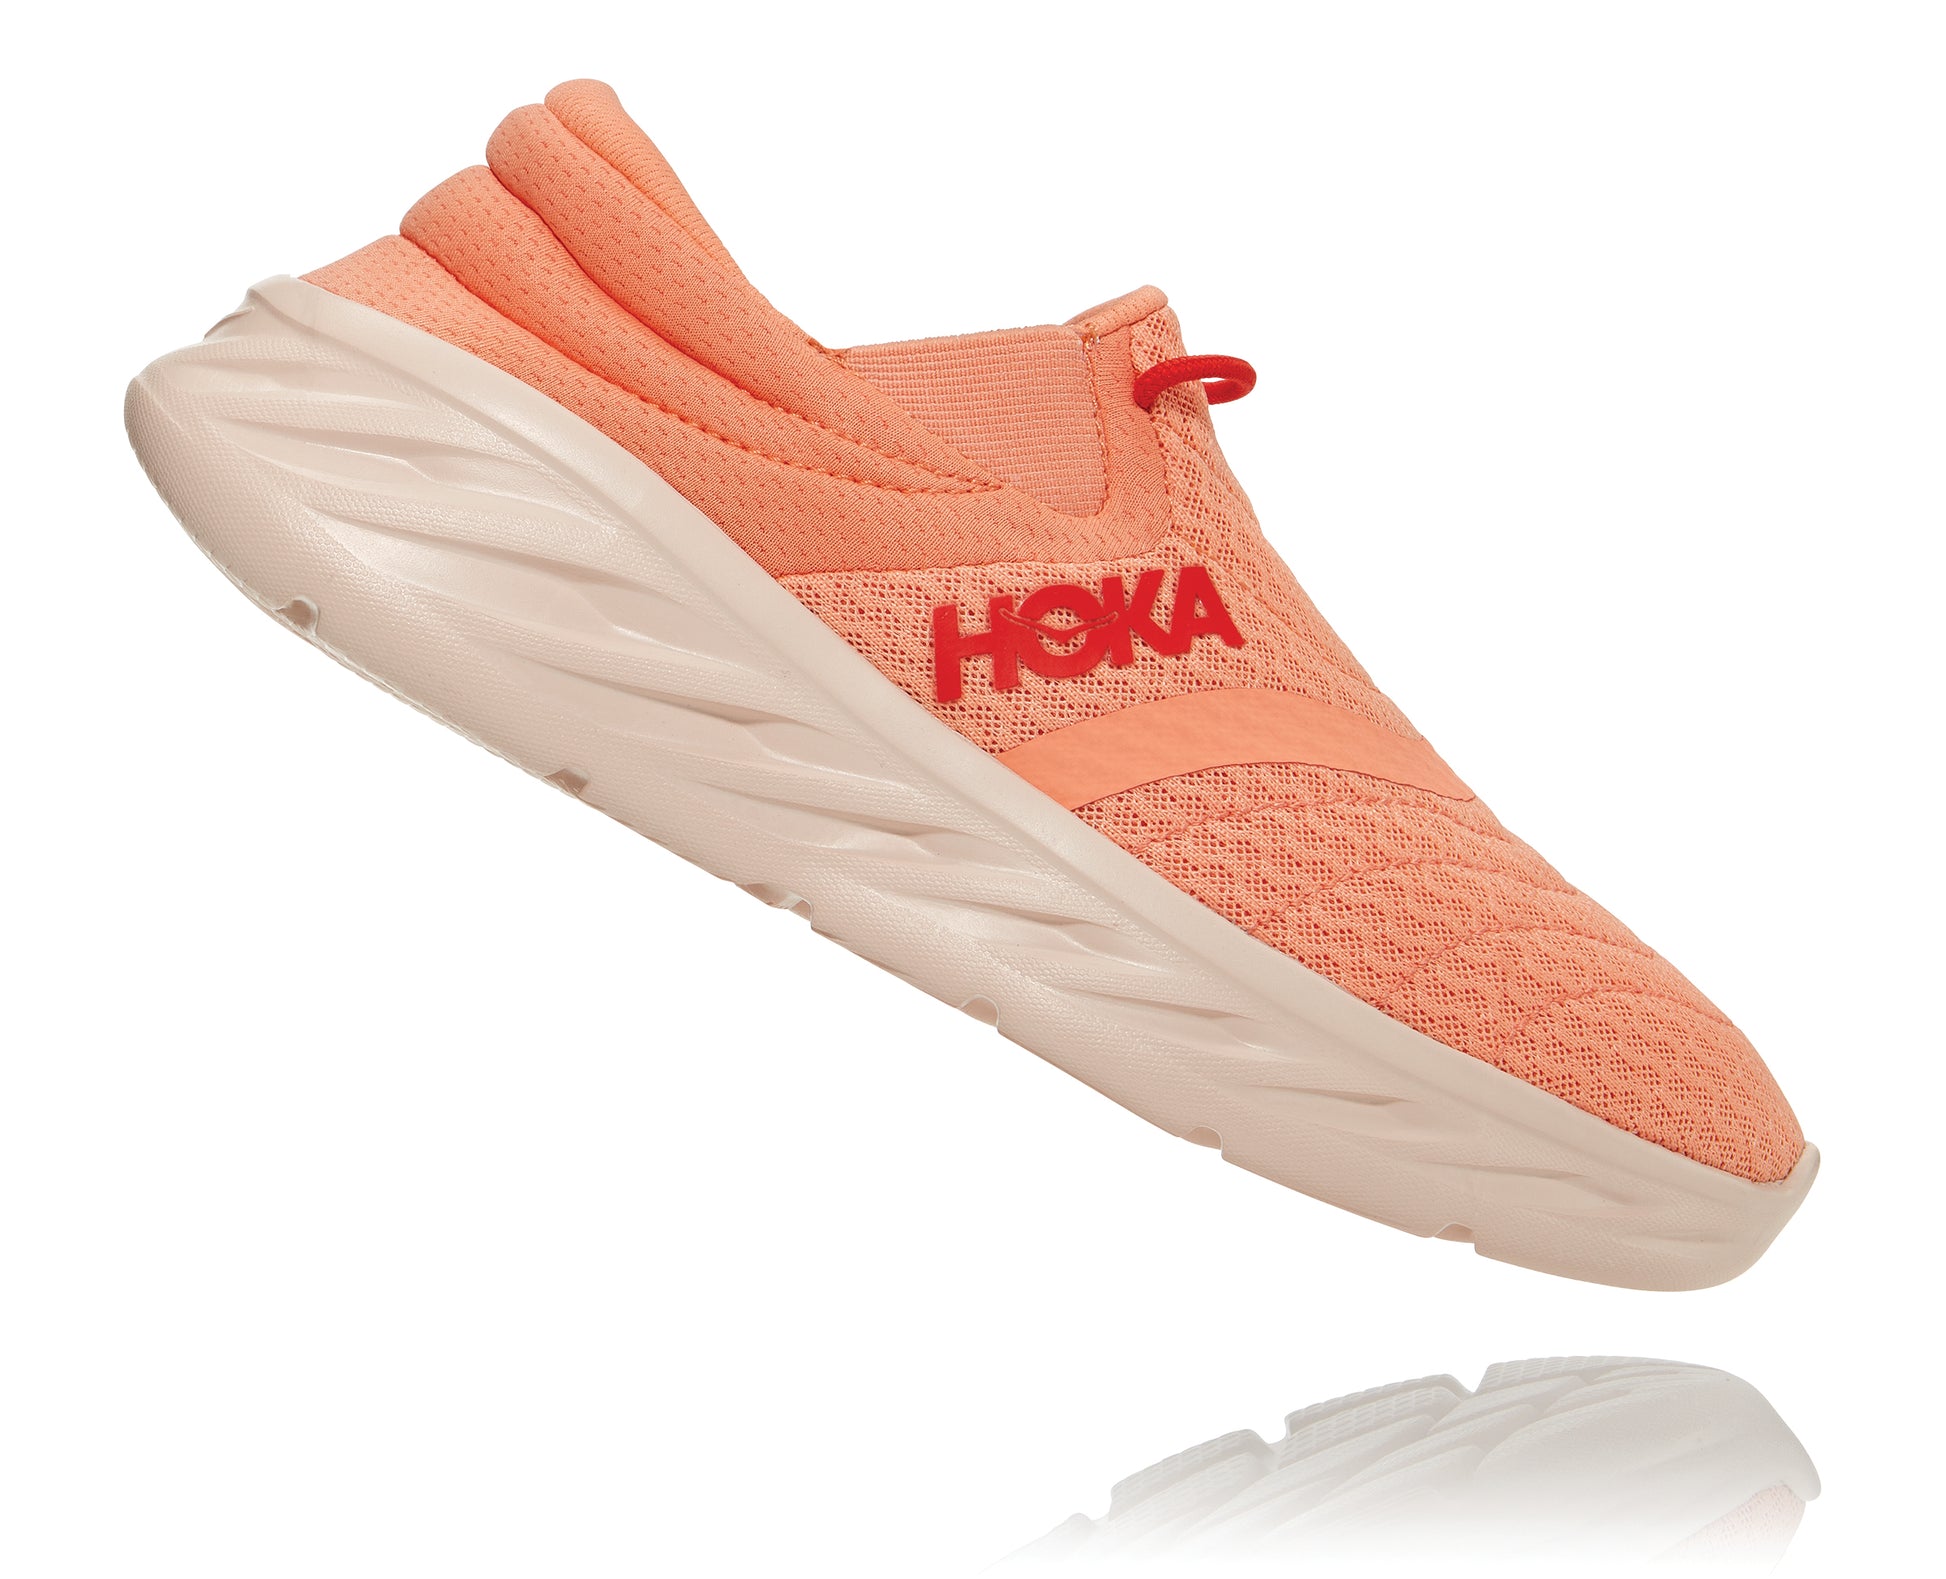 2  – HOKA Ora Recovery Shoes 2 נעלי גרב הוקה אורה